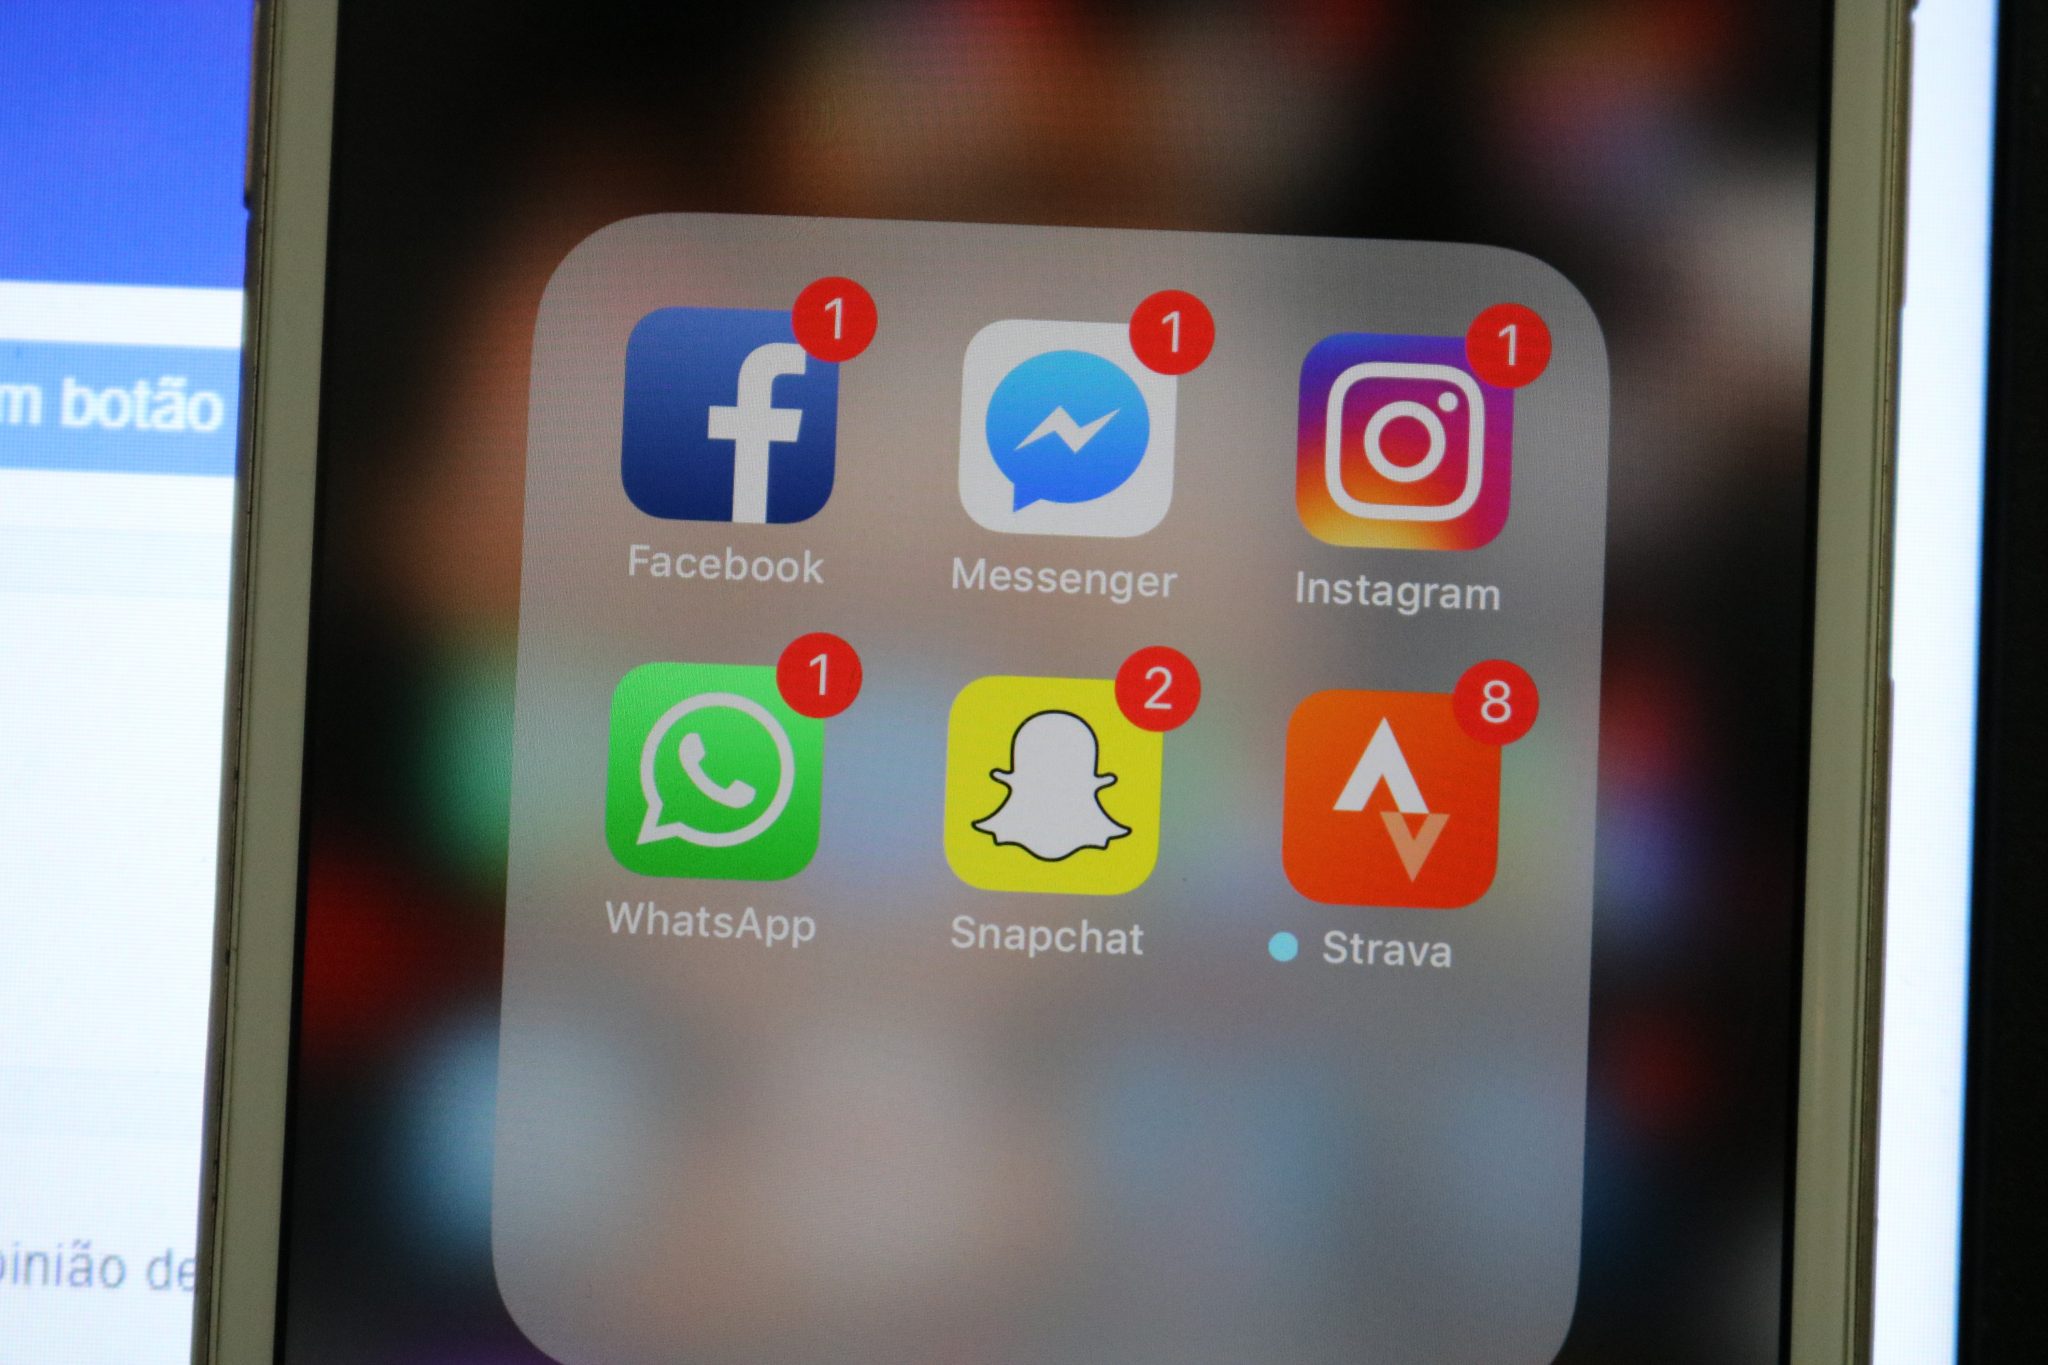 WhatsApp, Facebook, Messenger, Twitter e Instagram estão com problemas